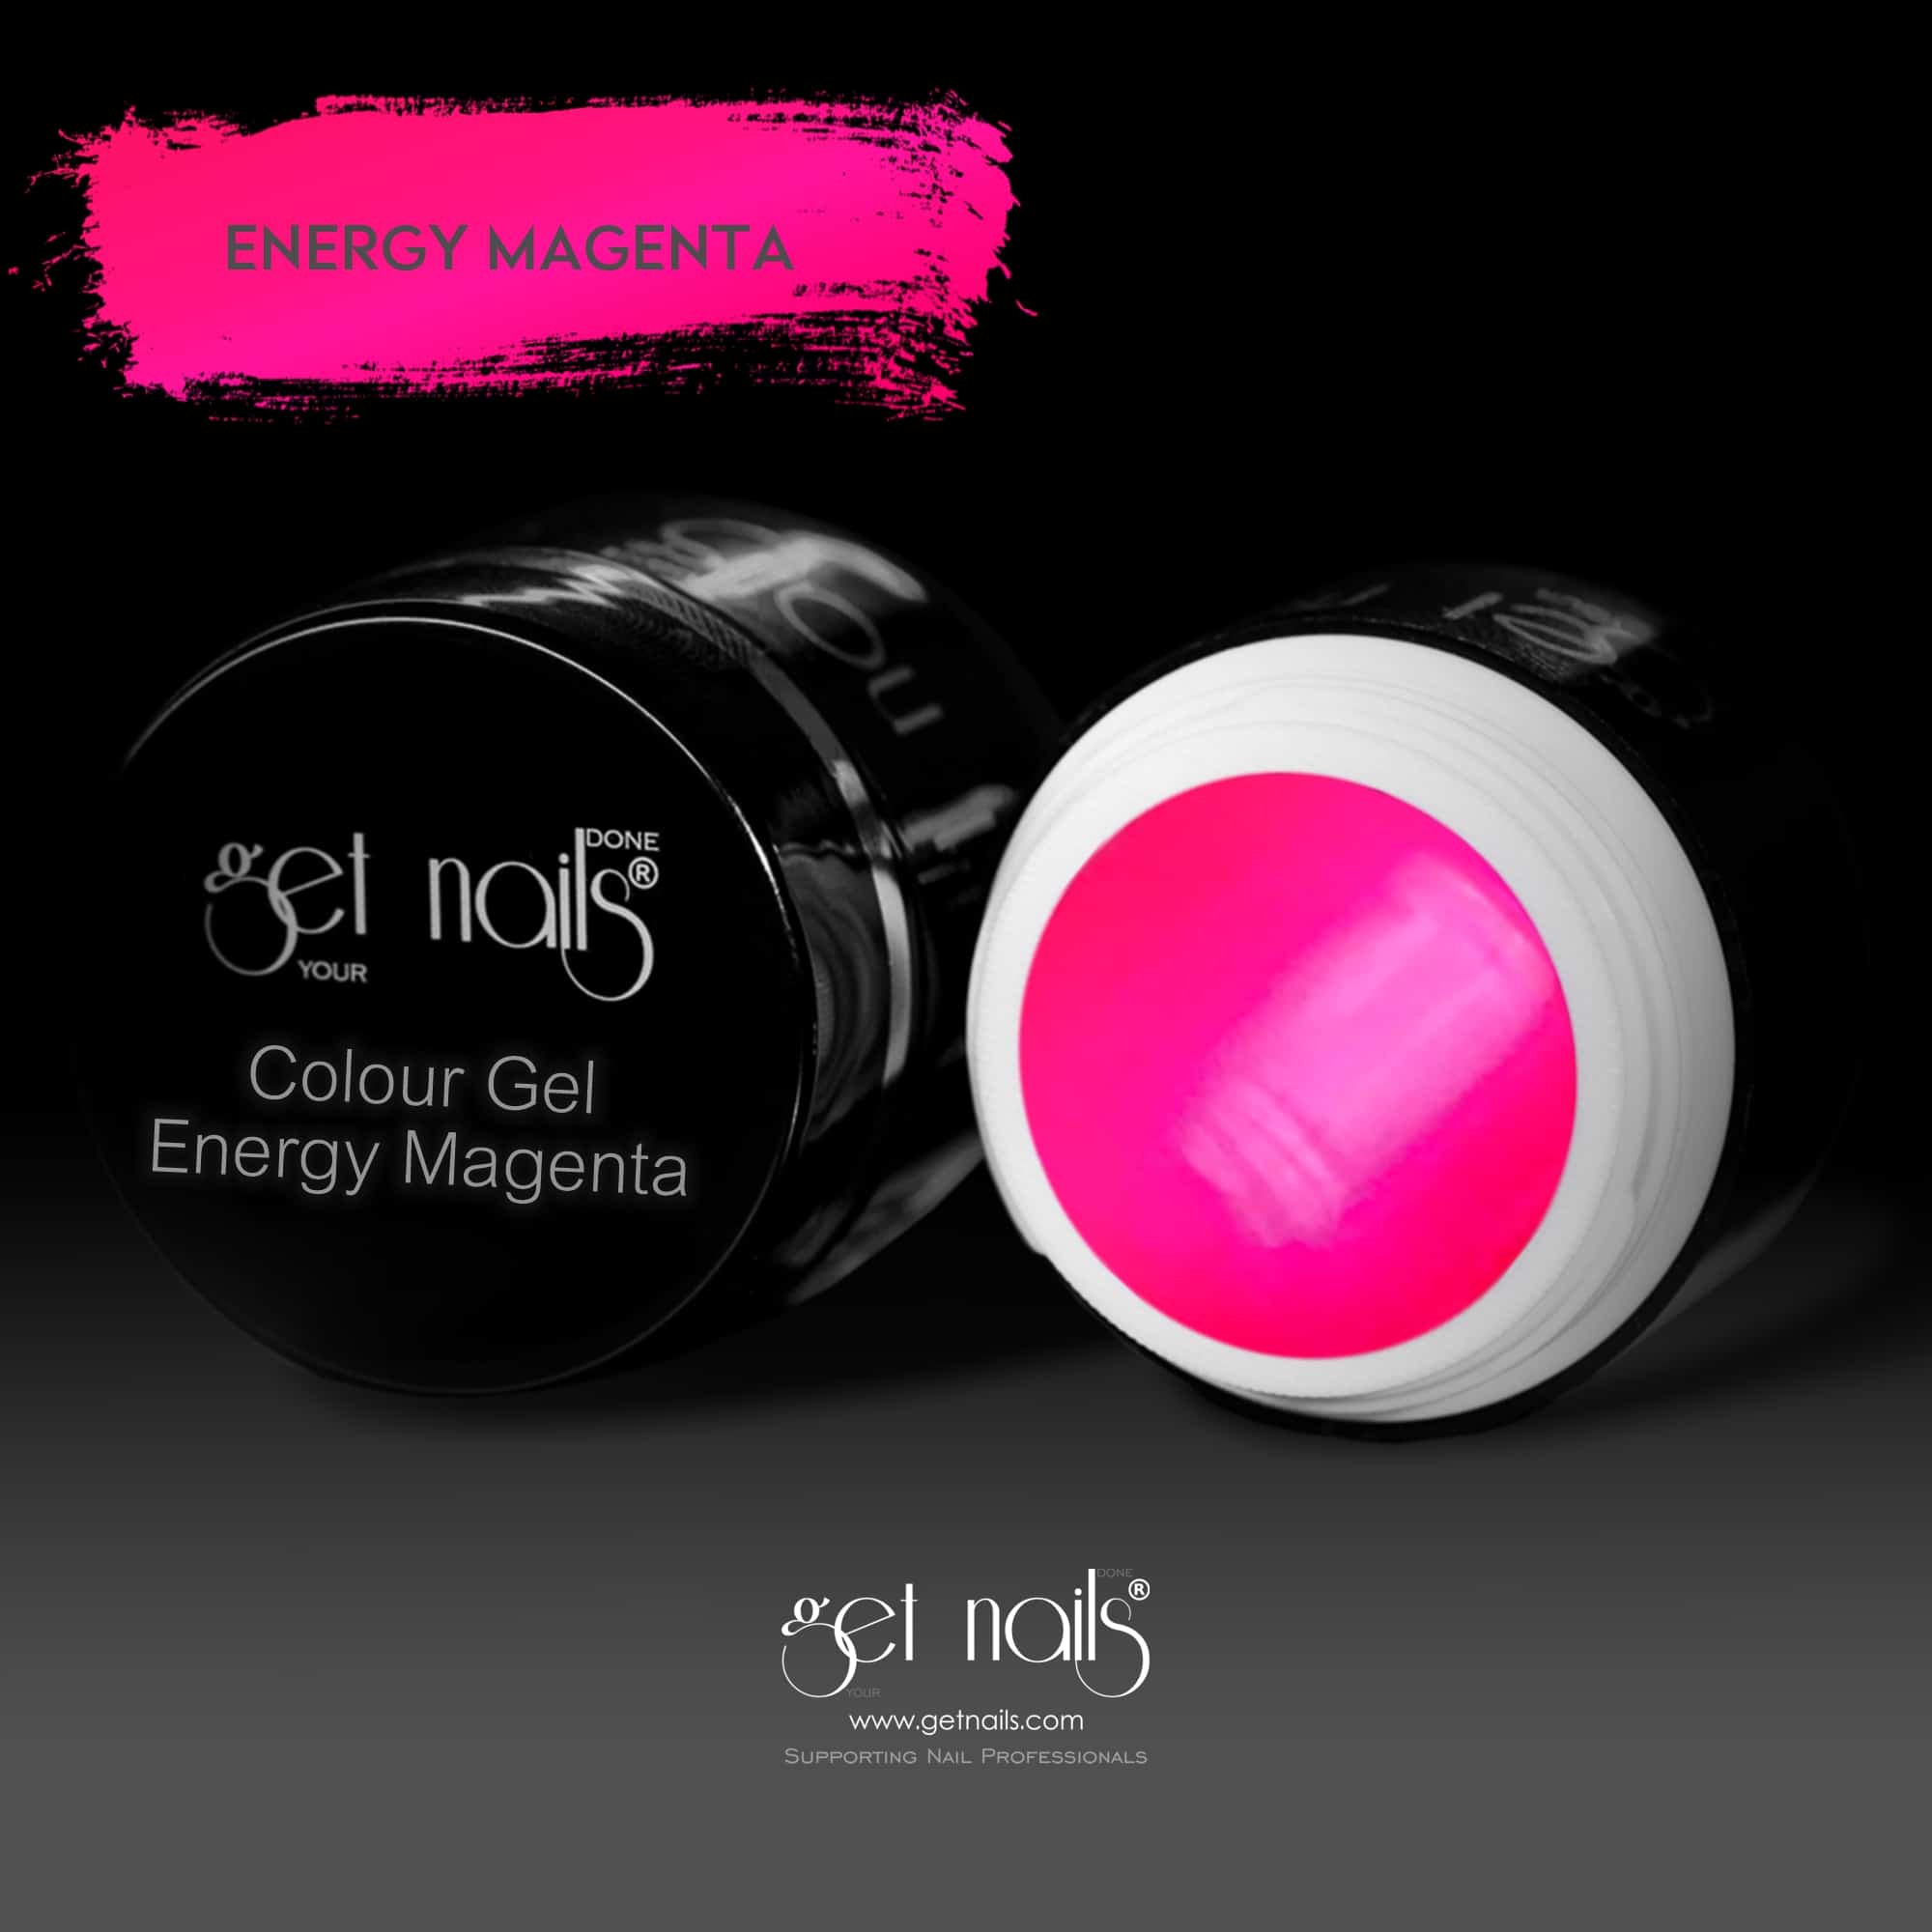 Get Nails Austria - Colour Gel Energy Magenta 5g